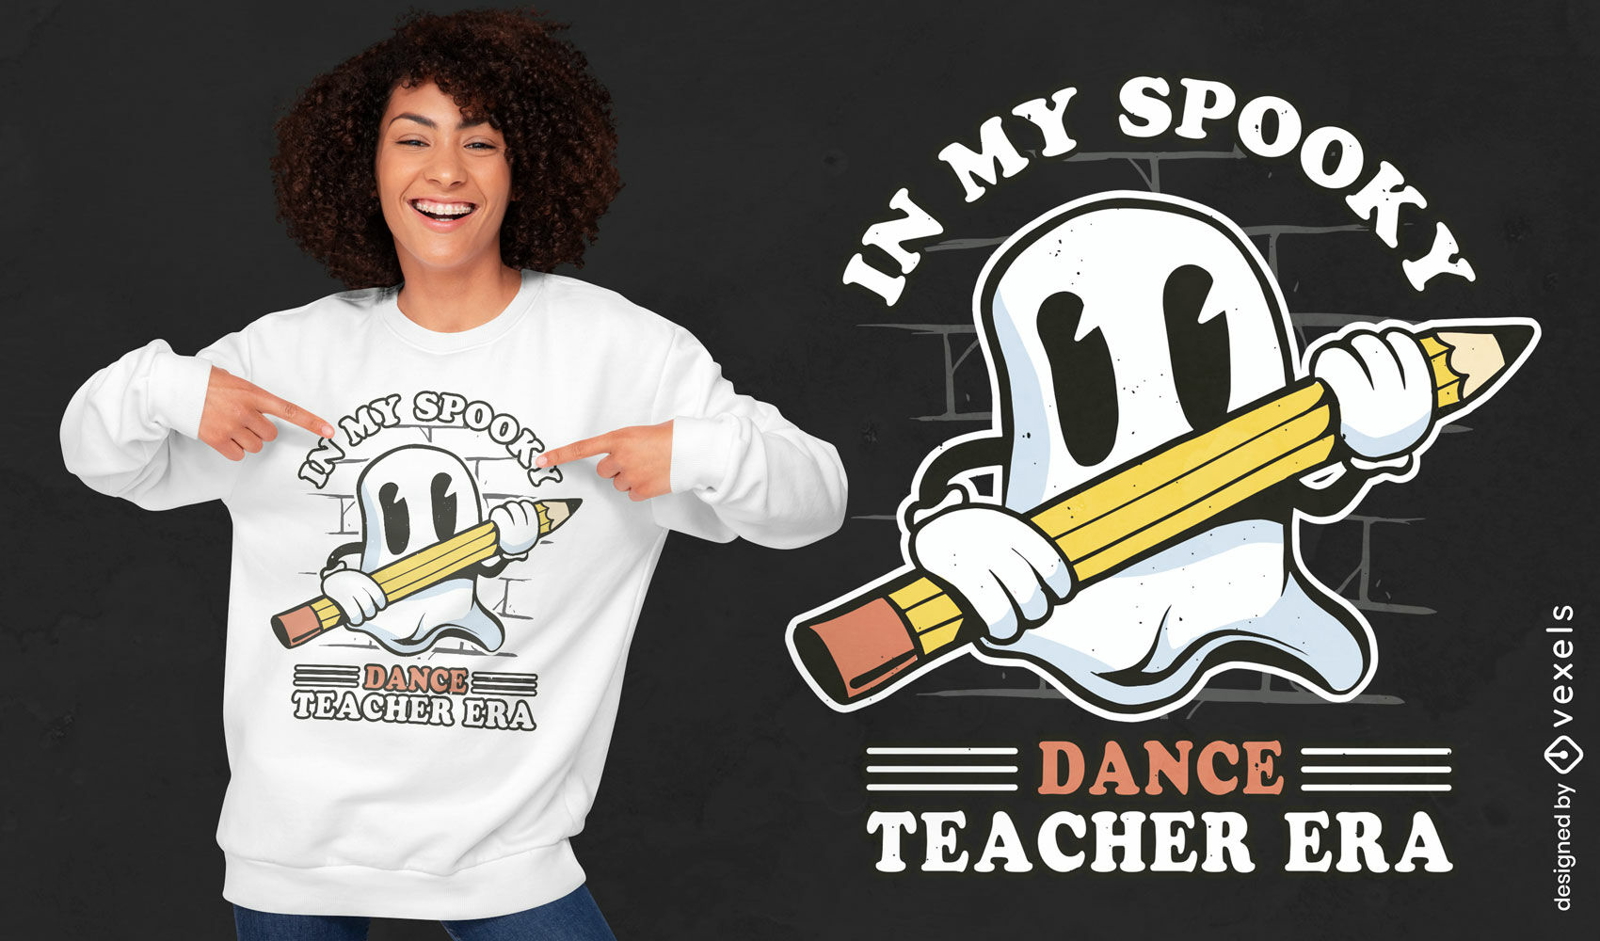 Spooky dance teacher t-shirt design